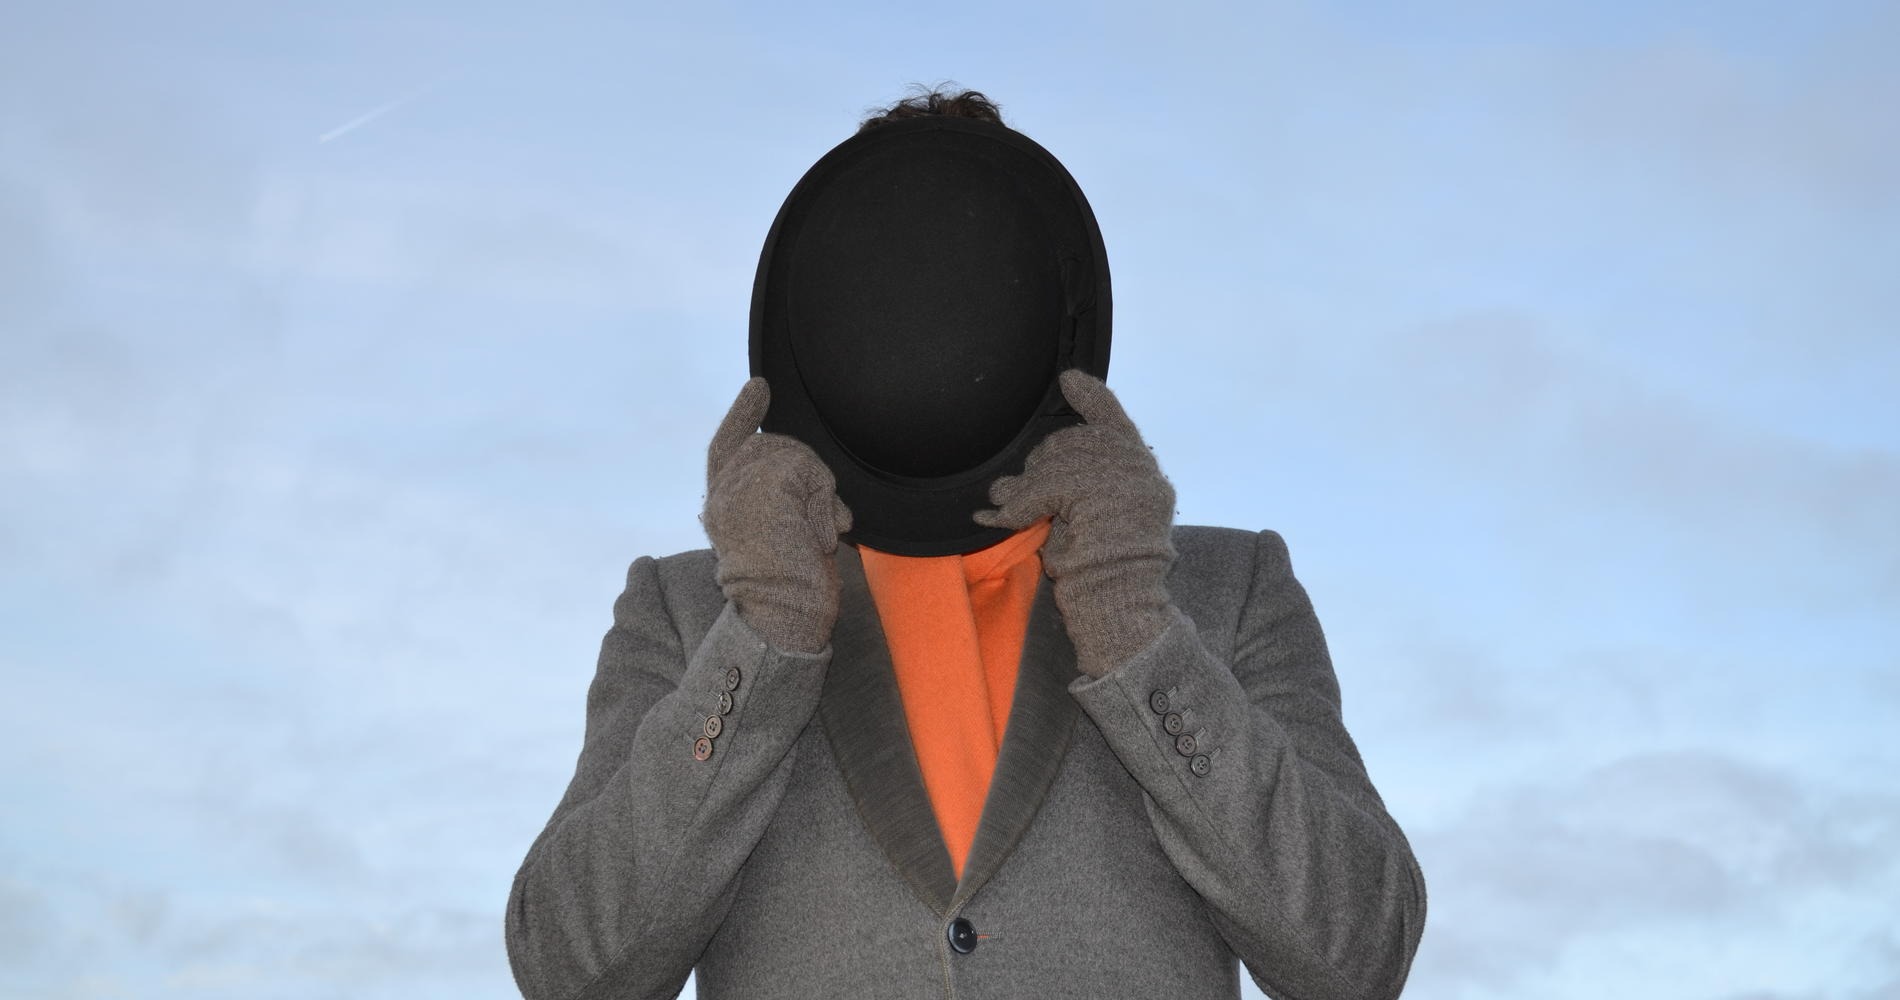 რენე მაგრიტი: კაცი შლაპაში / Rene Magritte: Man in the Hat (Rene Magriti: Kaci Shlapashi Qartulad) ქართულად